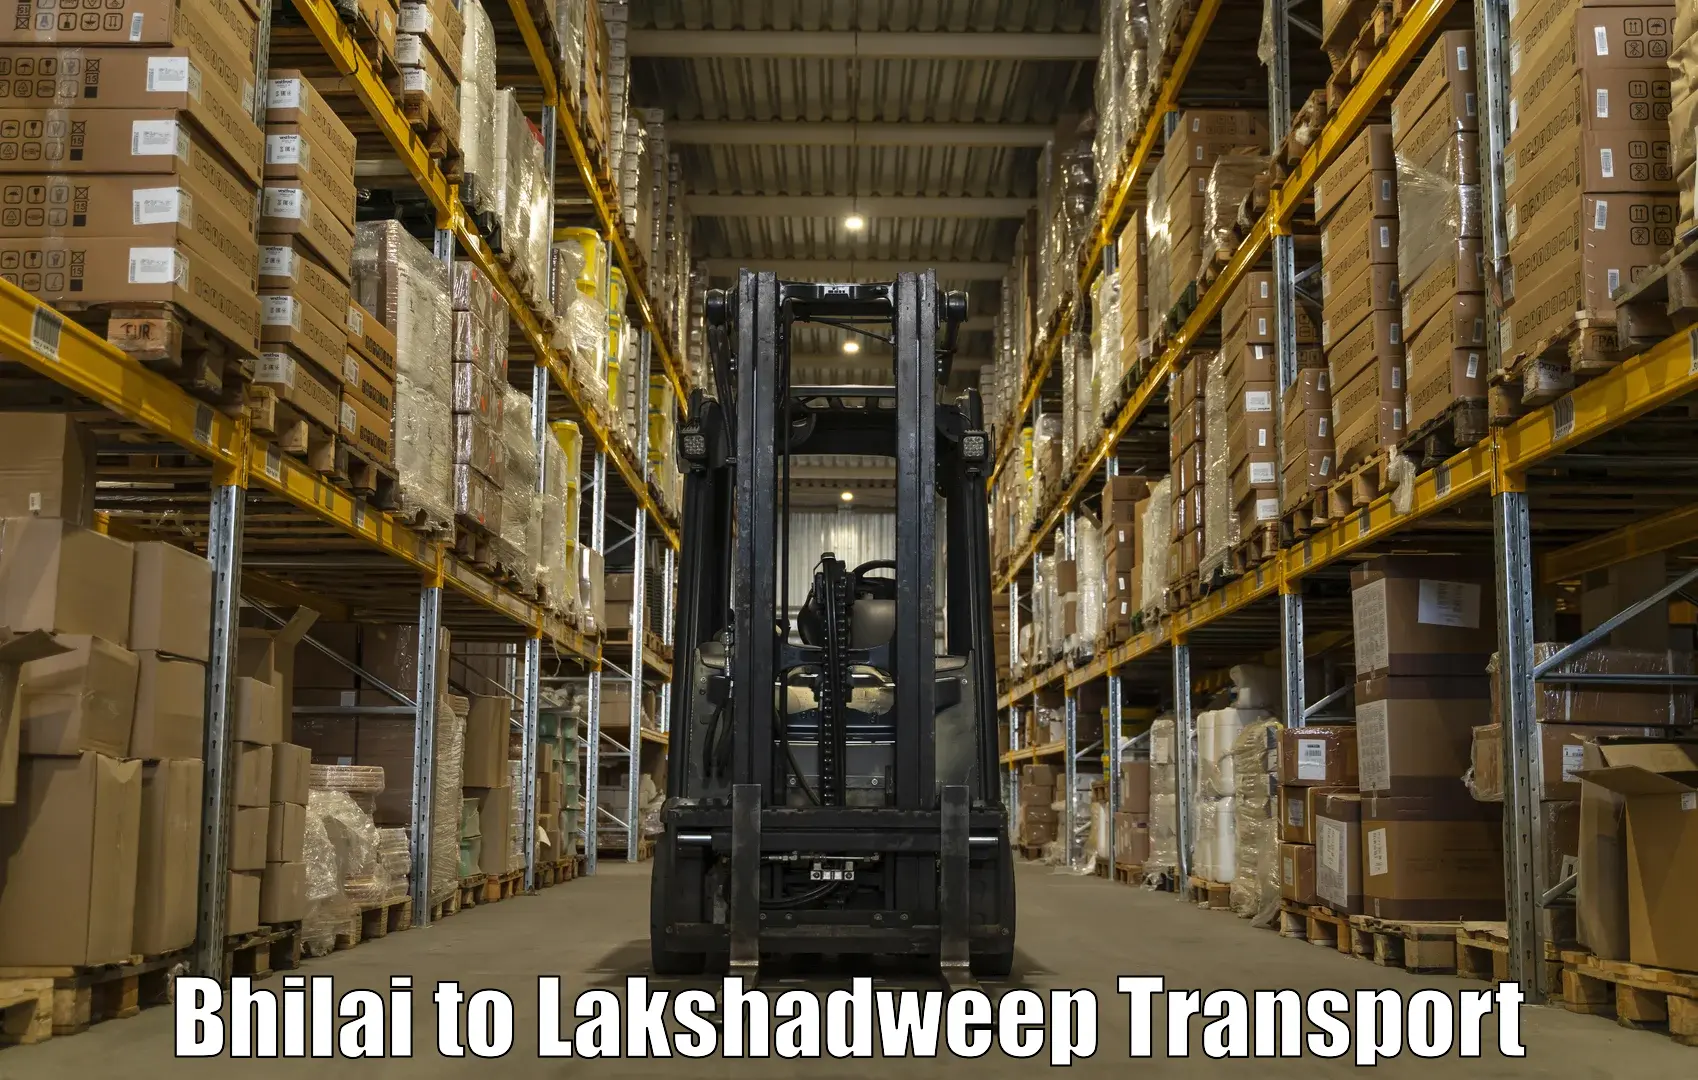 Lorry transport service Bhilai to Lakshadweep